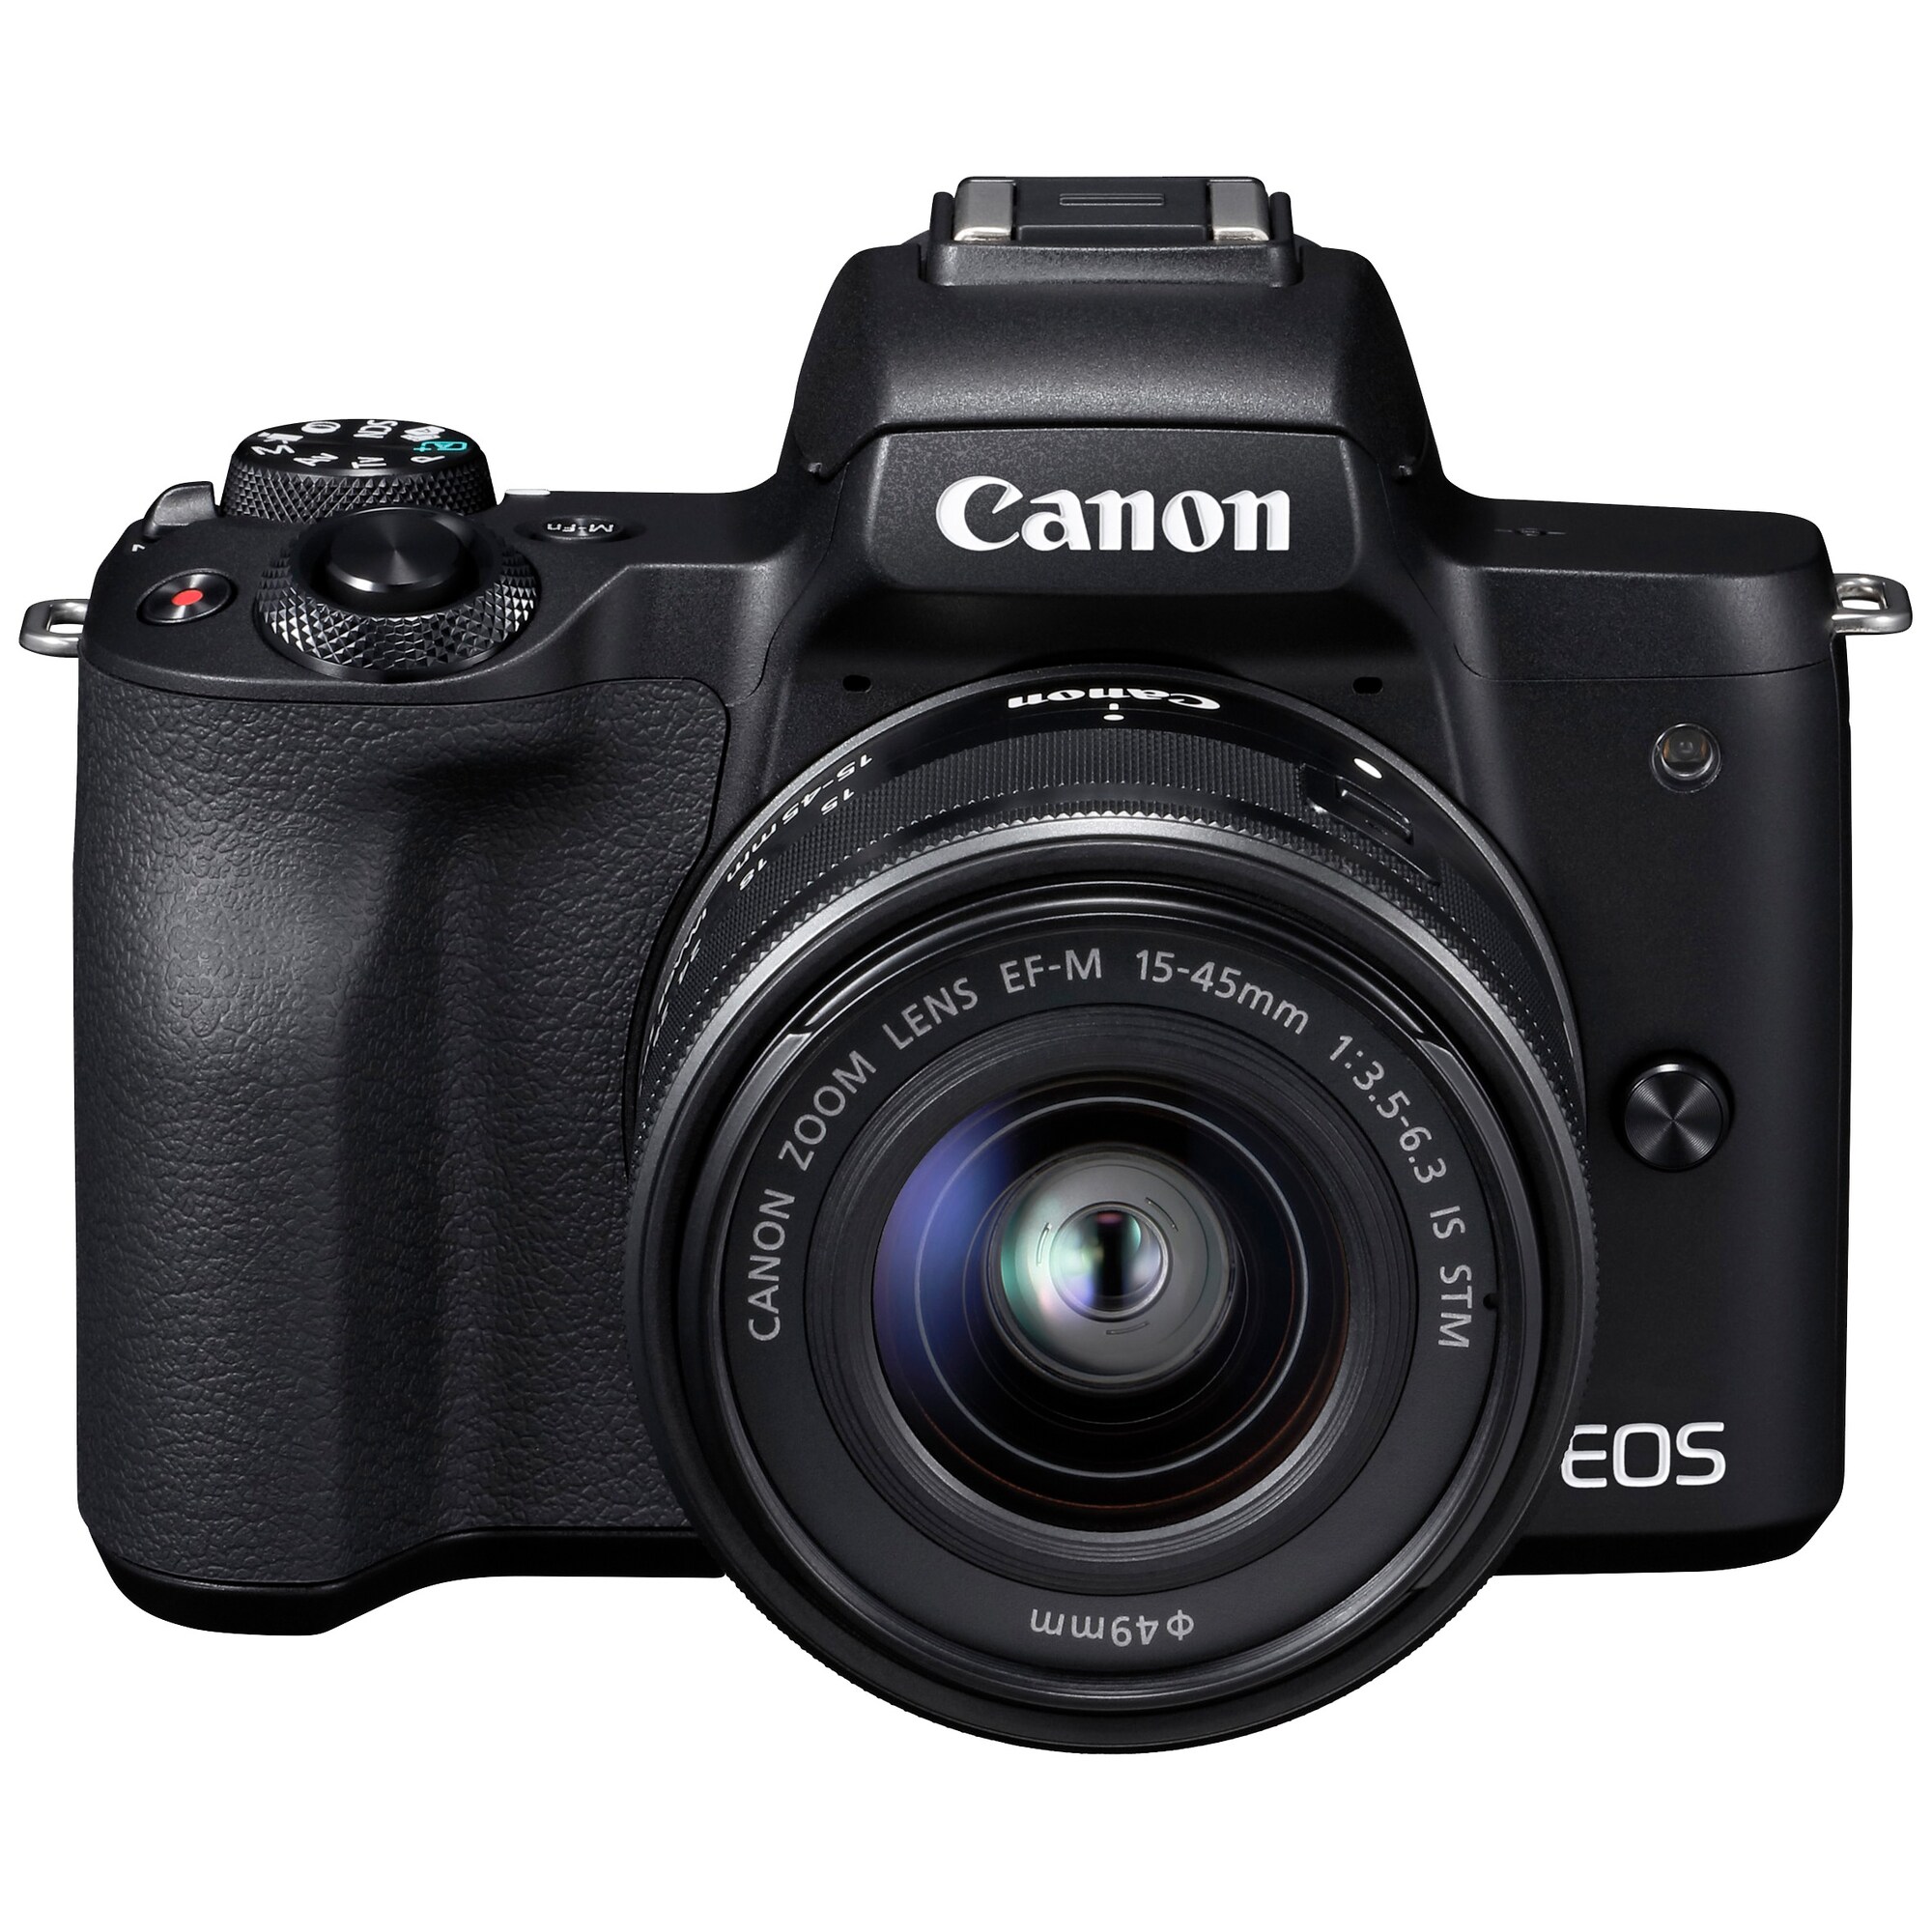 Canon EOS M50 kompakti järjestelmäkamera + 15-45 IS STM objektiivi -  Striimaus ja podcastit - Gigantti